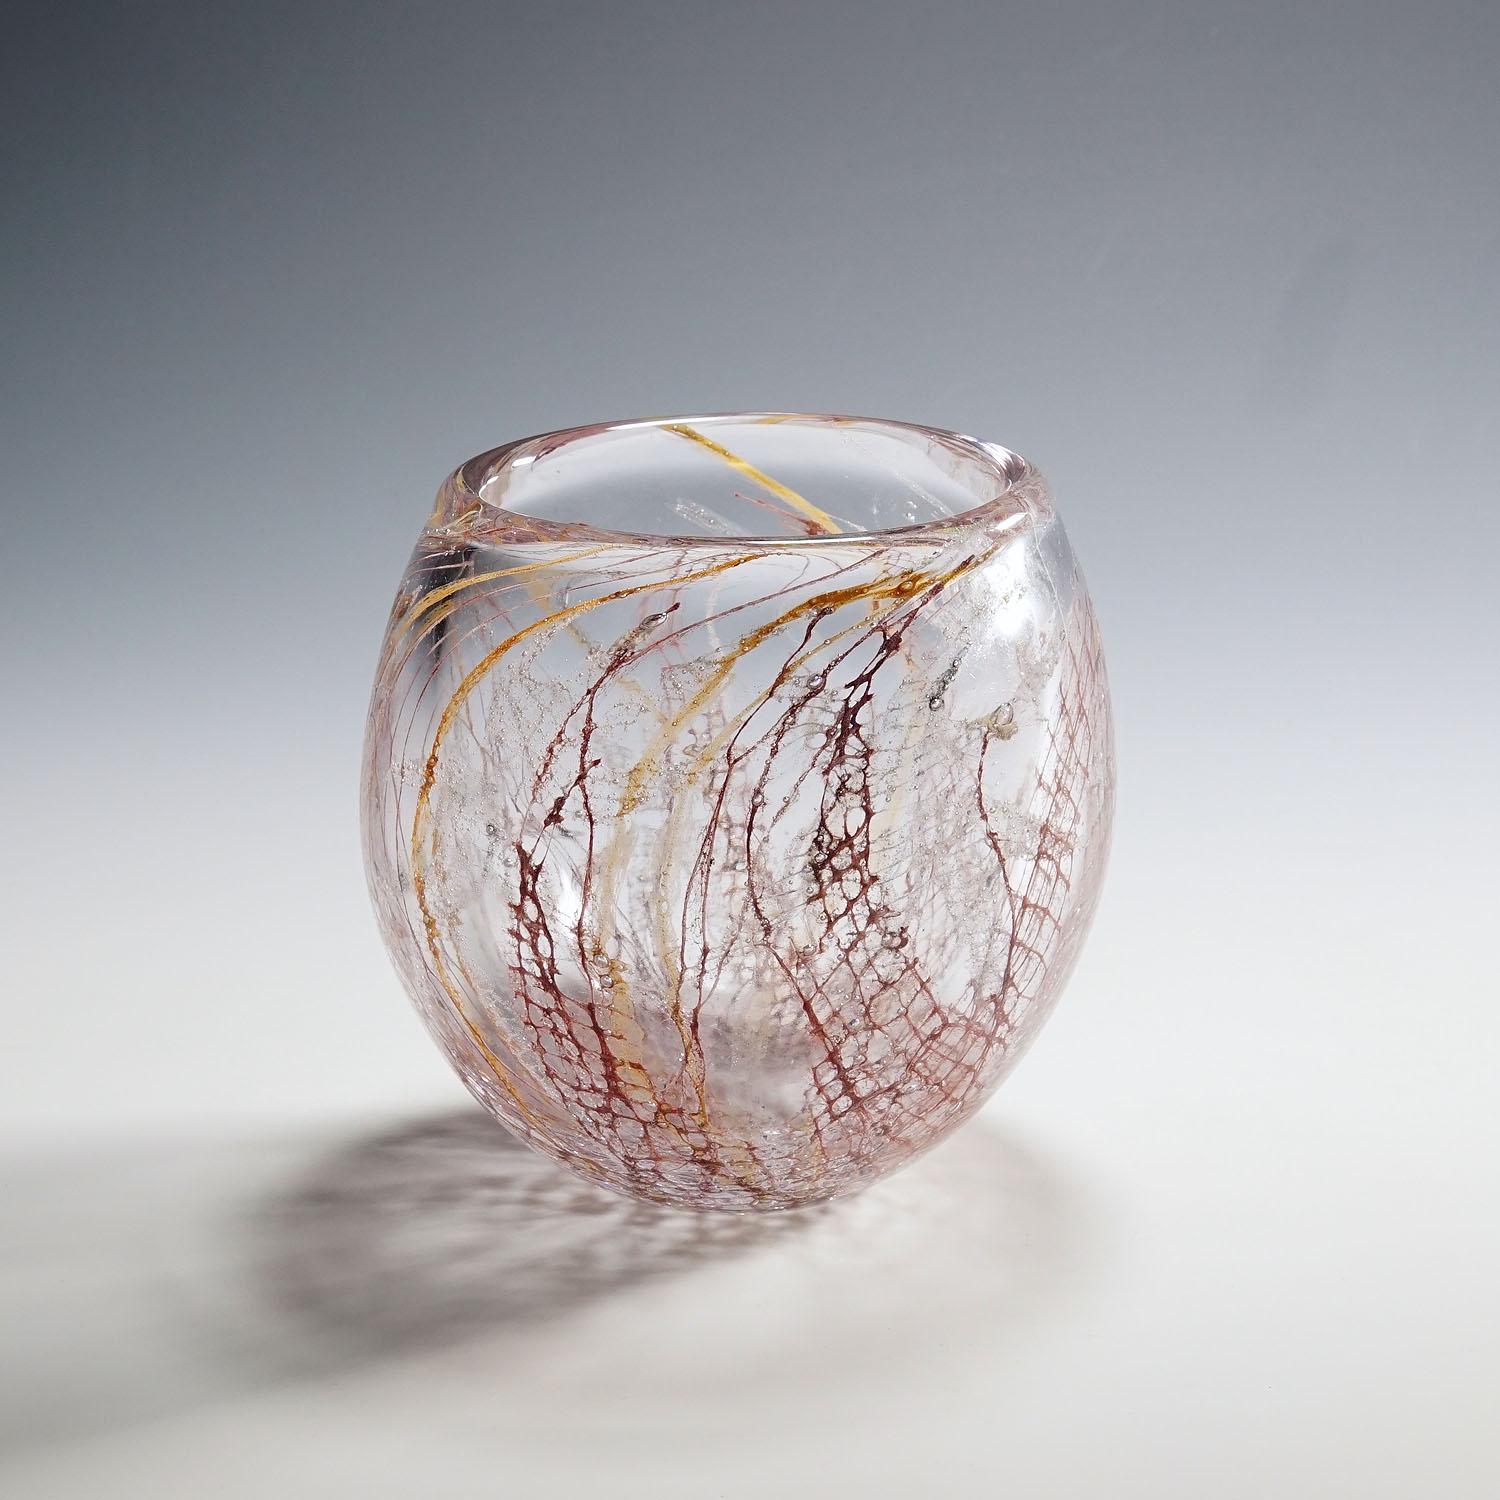 Glaskunst-Vase mit Sjogras von Goran Stroemgren für Art Glassworks Urshult Schweden

Eine seltene 